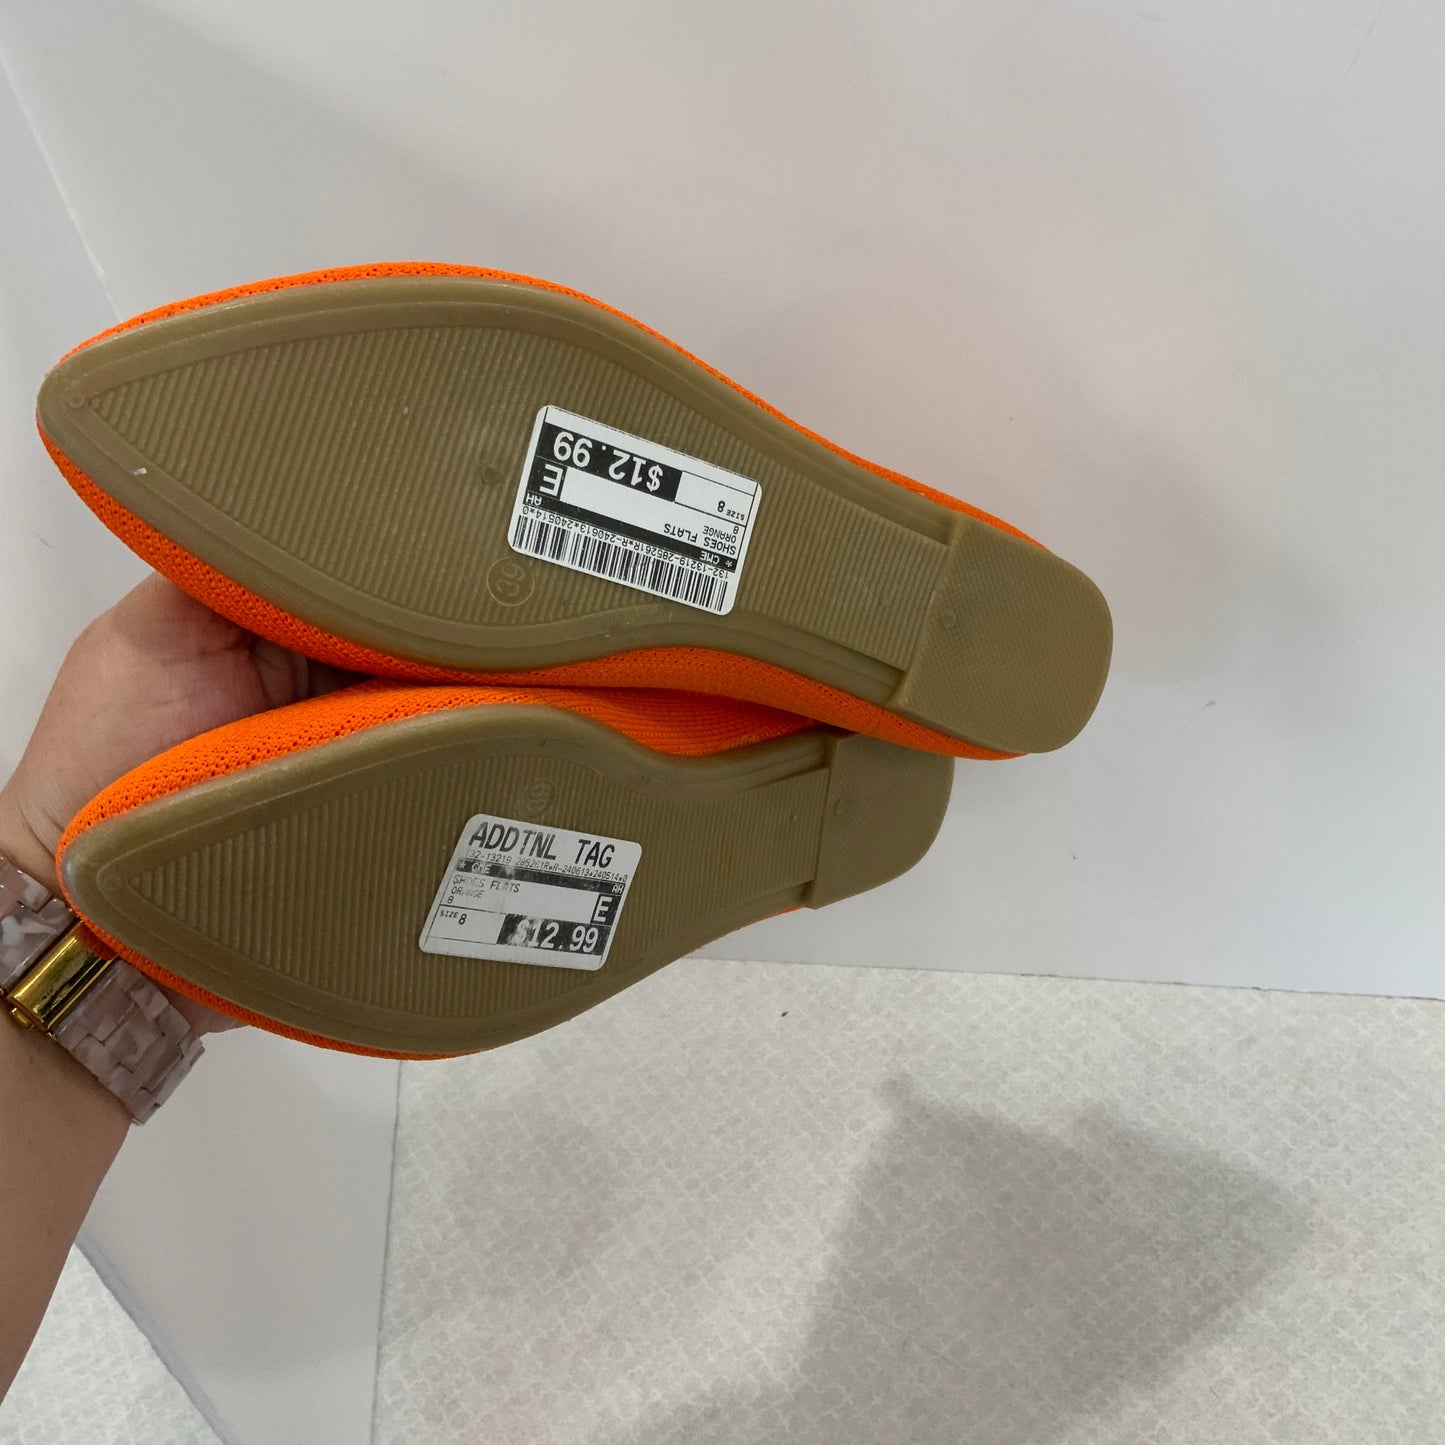 Orange Shoes Flats Cme, Size 8